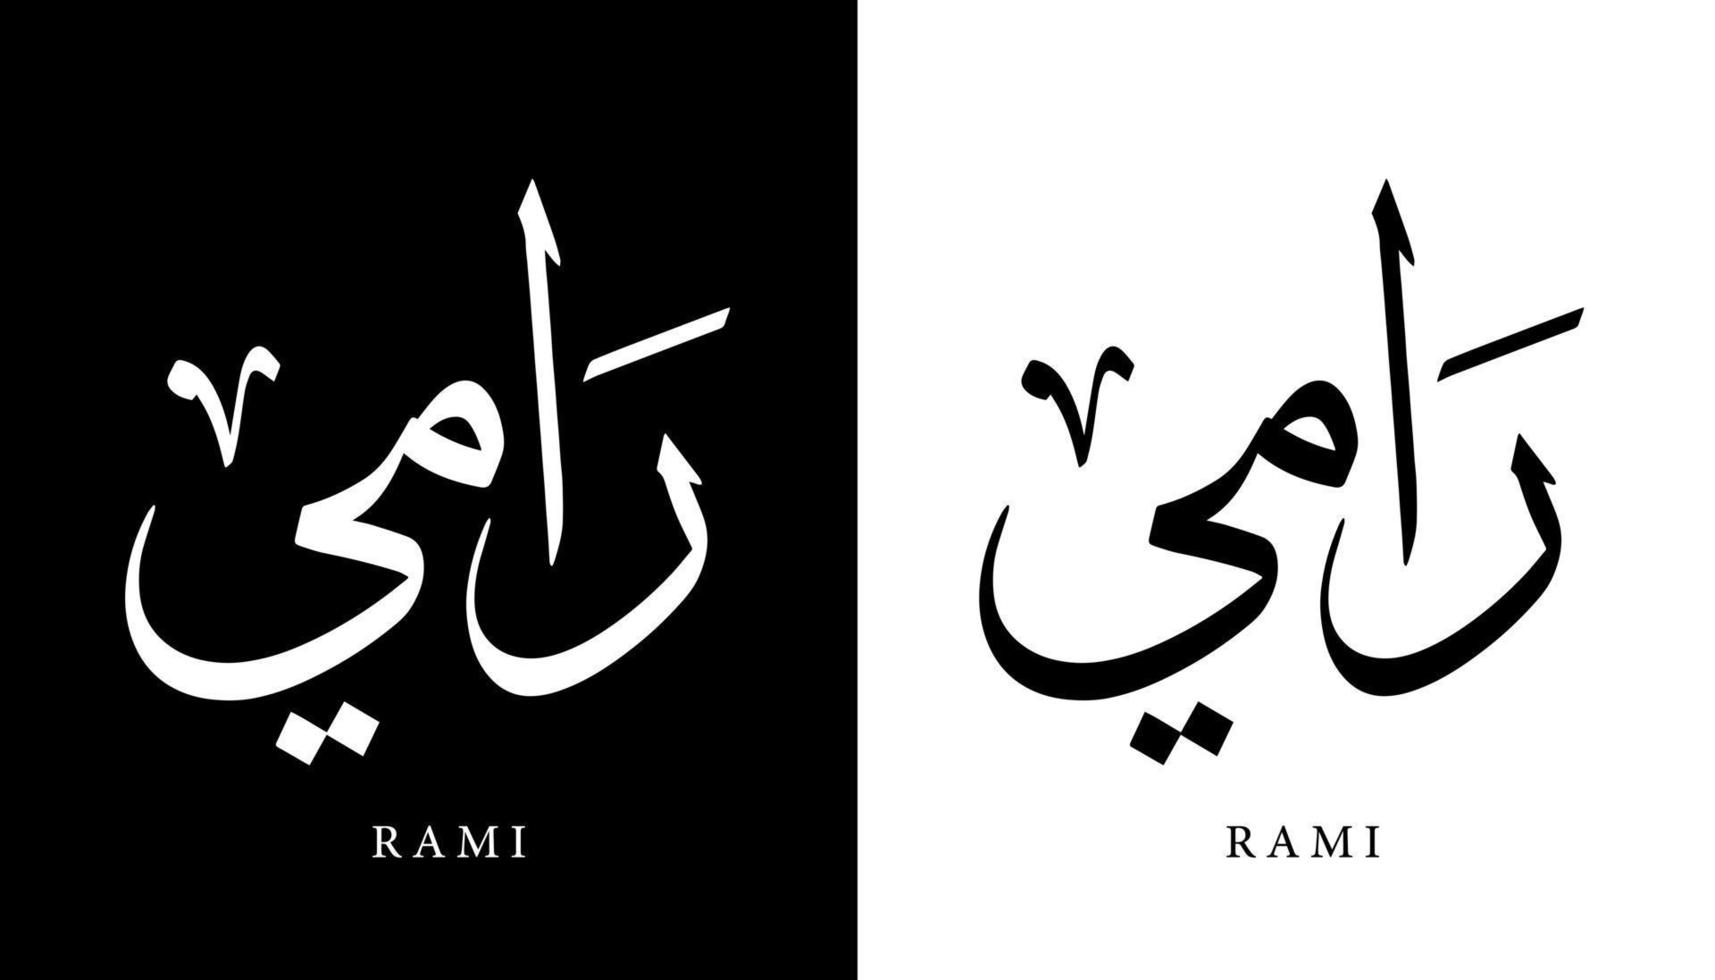 nome della calligrafia araba tradotto 'rami' lettere arabe alfabeto font lettering logo islamico illustrazione vettoriale